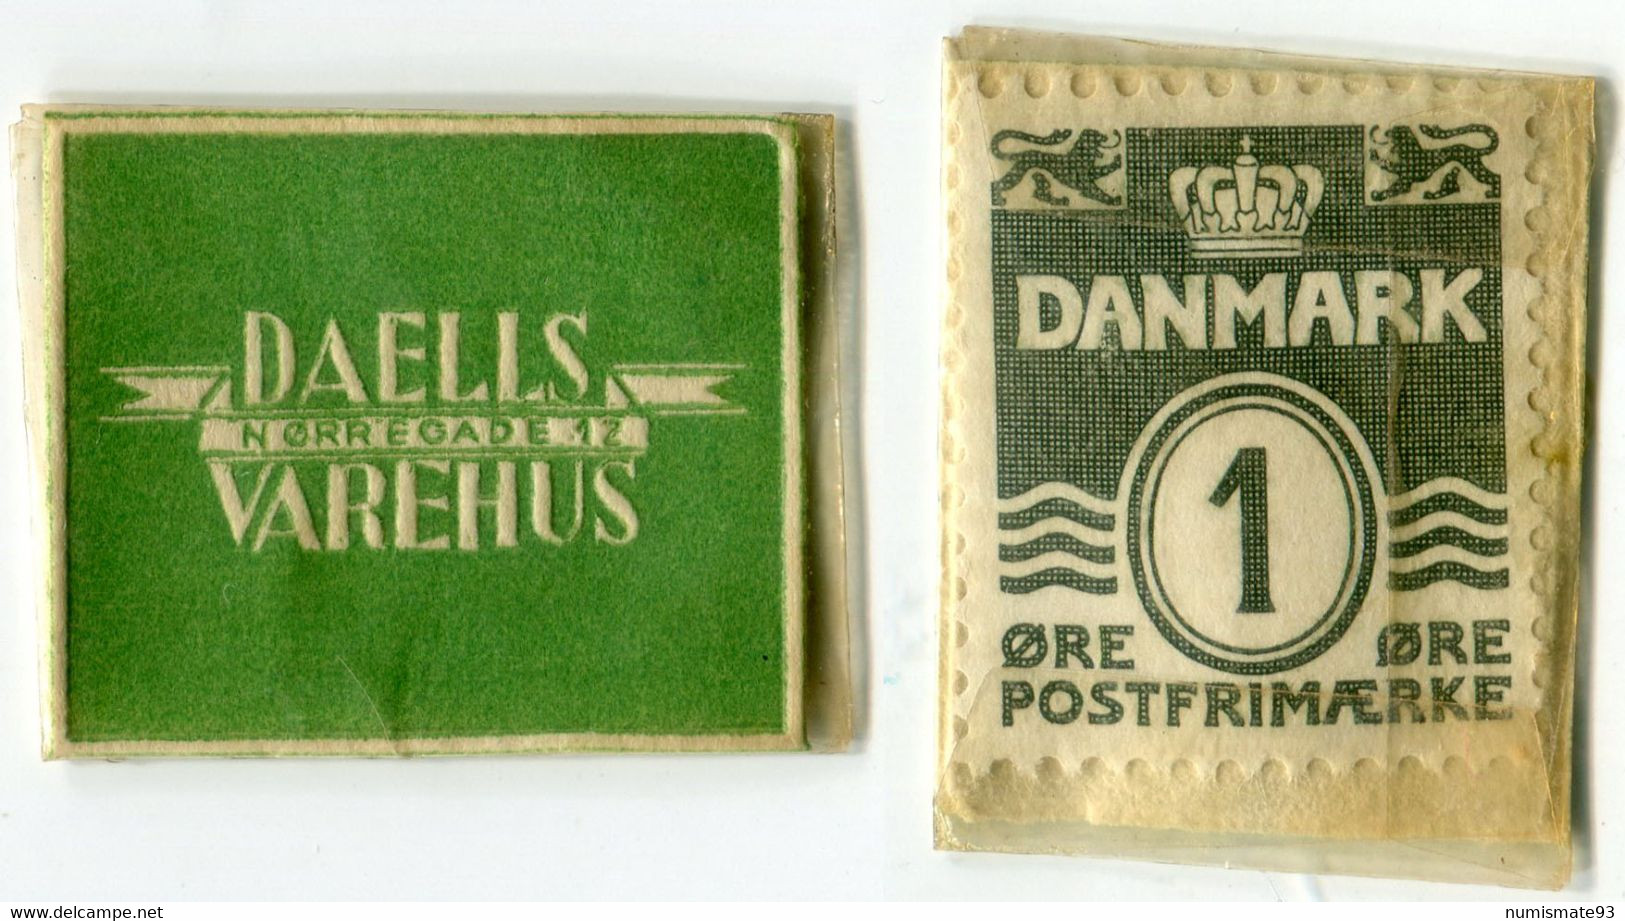 N93-0698 - Timbre-monnaie - Danemark - Daells Varehus - Nørregade 12 - 1 øre - Kapselgeld - Encased Stamp - Notgeld